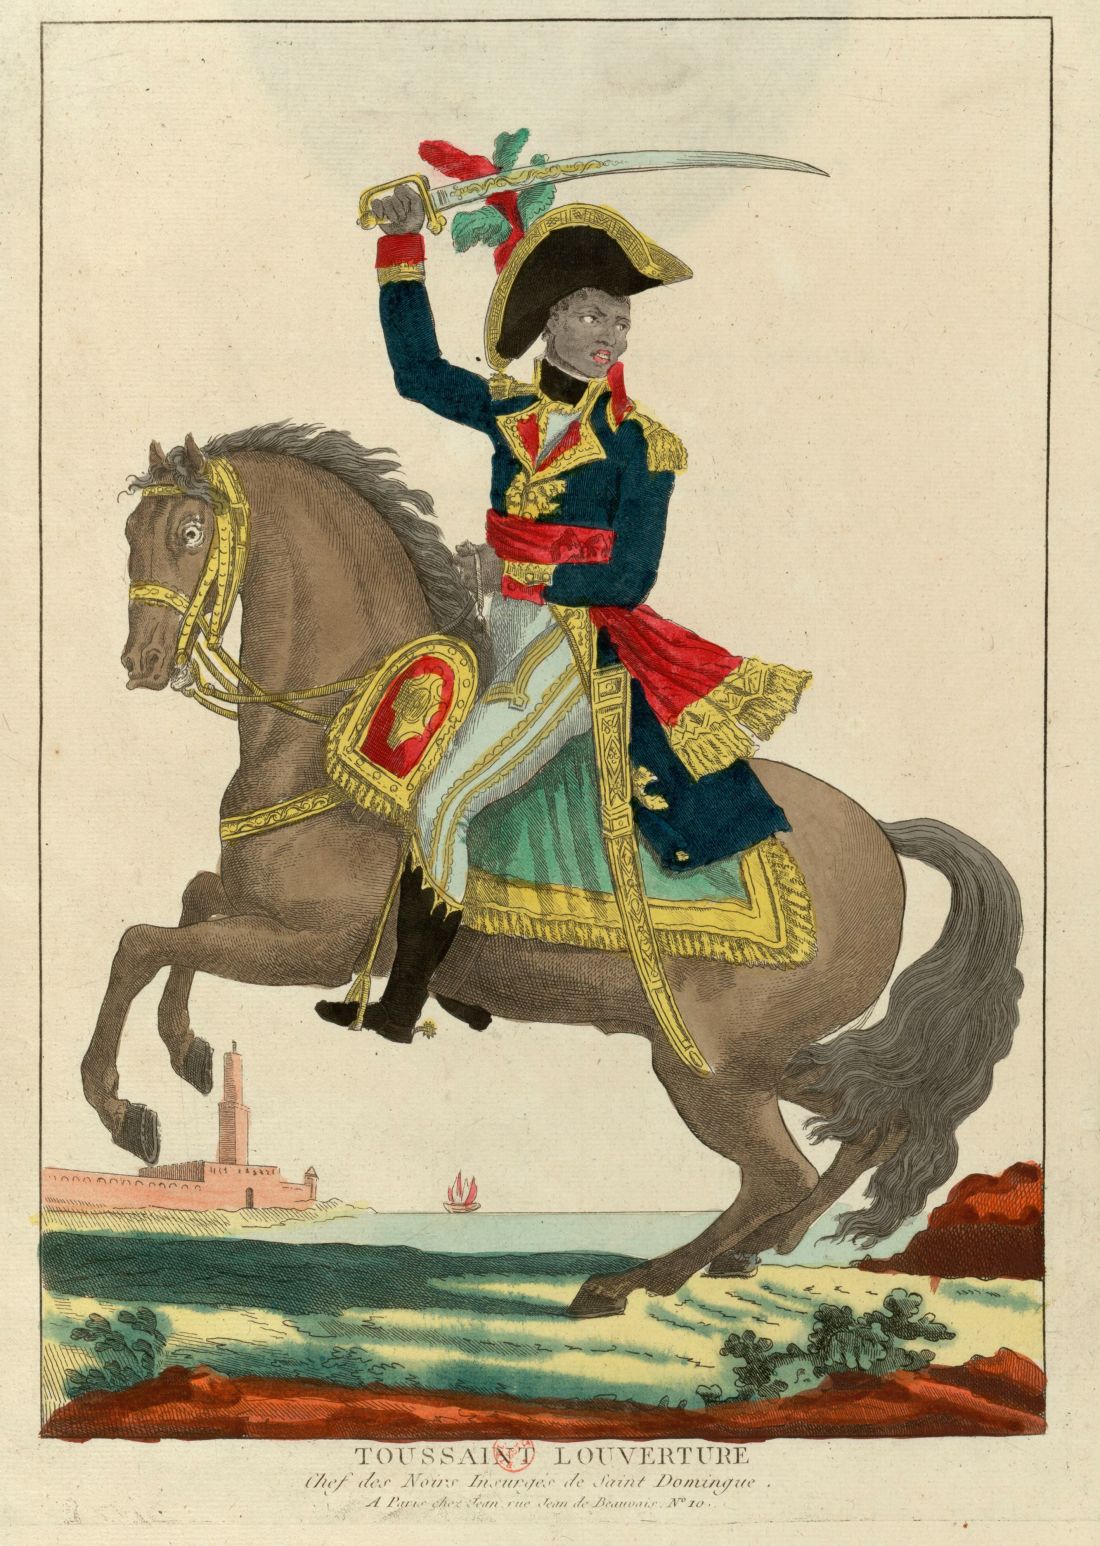  Une œuvre d'art représentant Toussaint Louverture en uniforme sur un cheval se dirigeant vers la bataille.